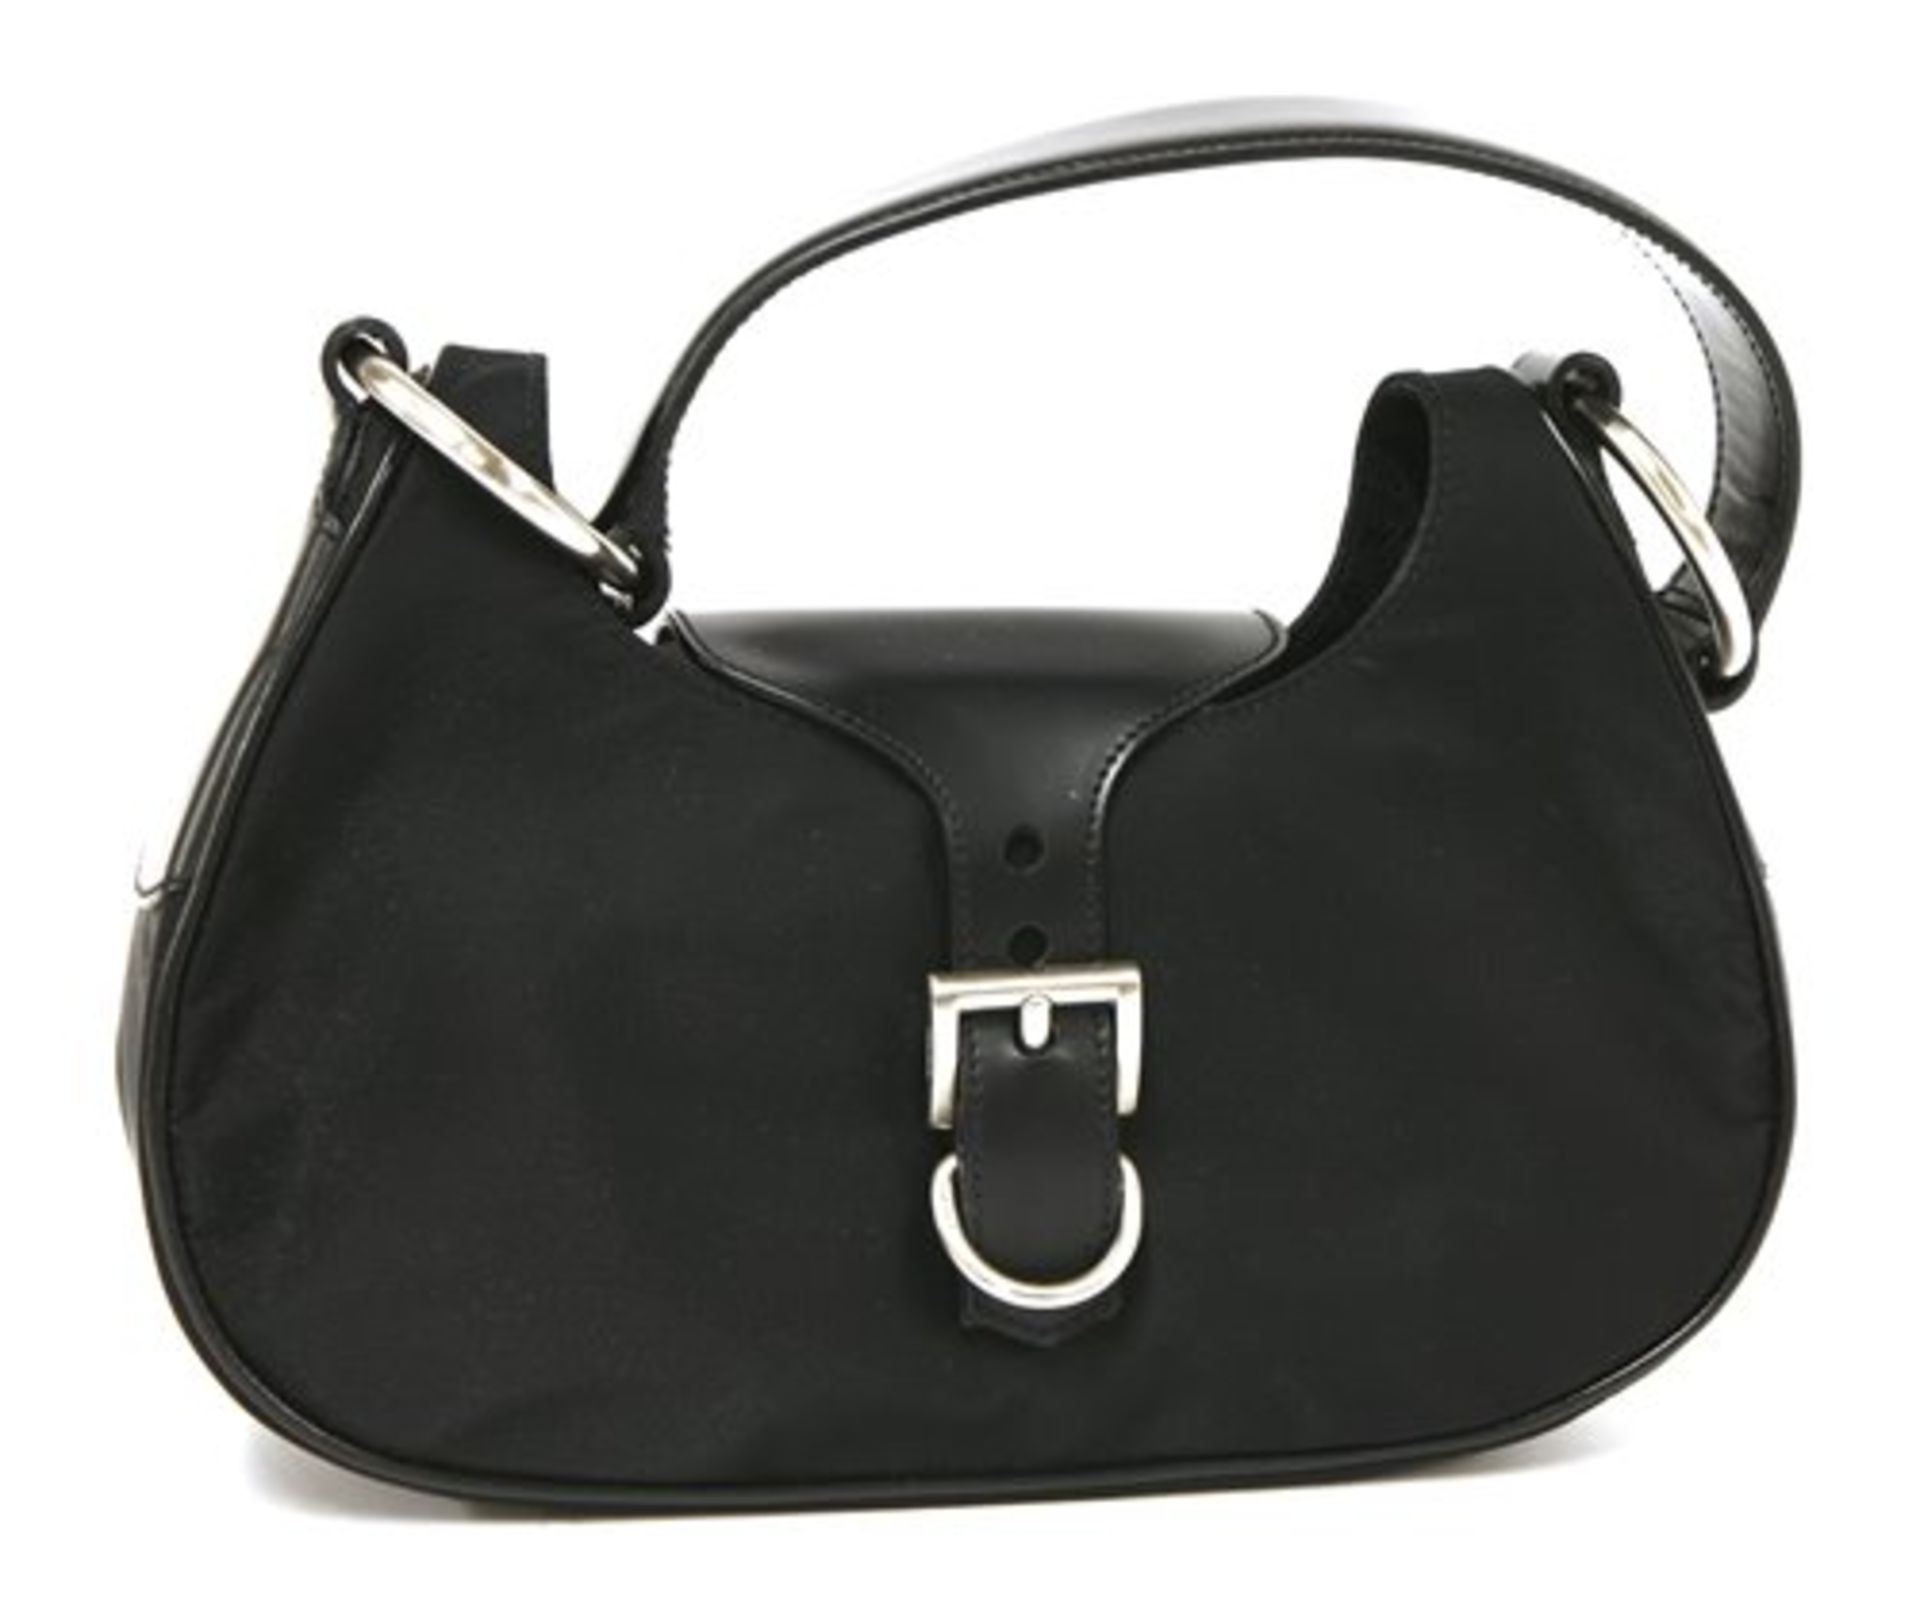 A Prada black canvas and leather handbag,